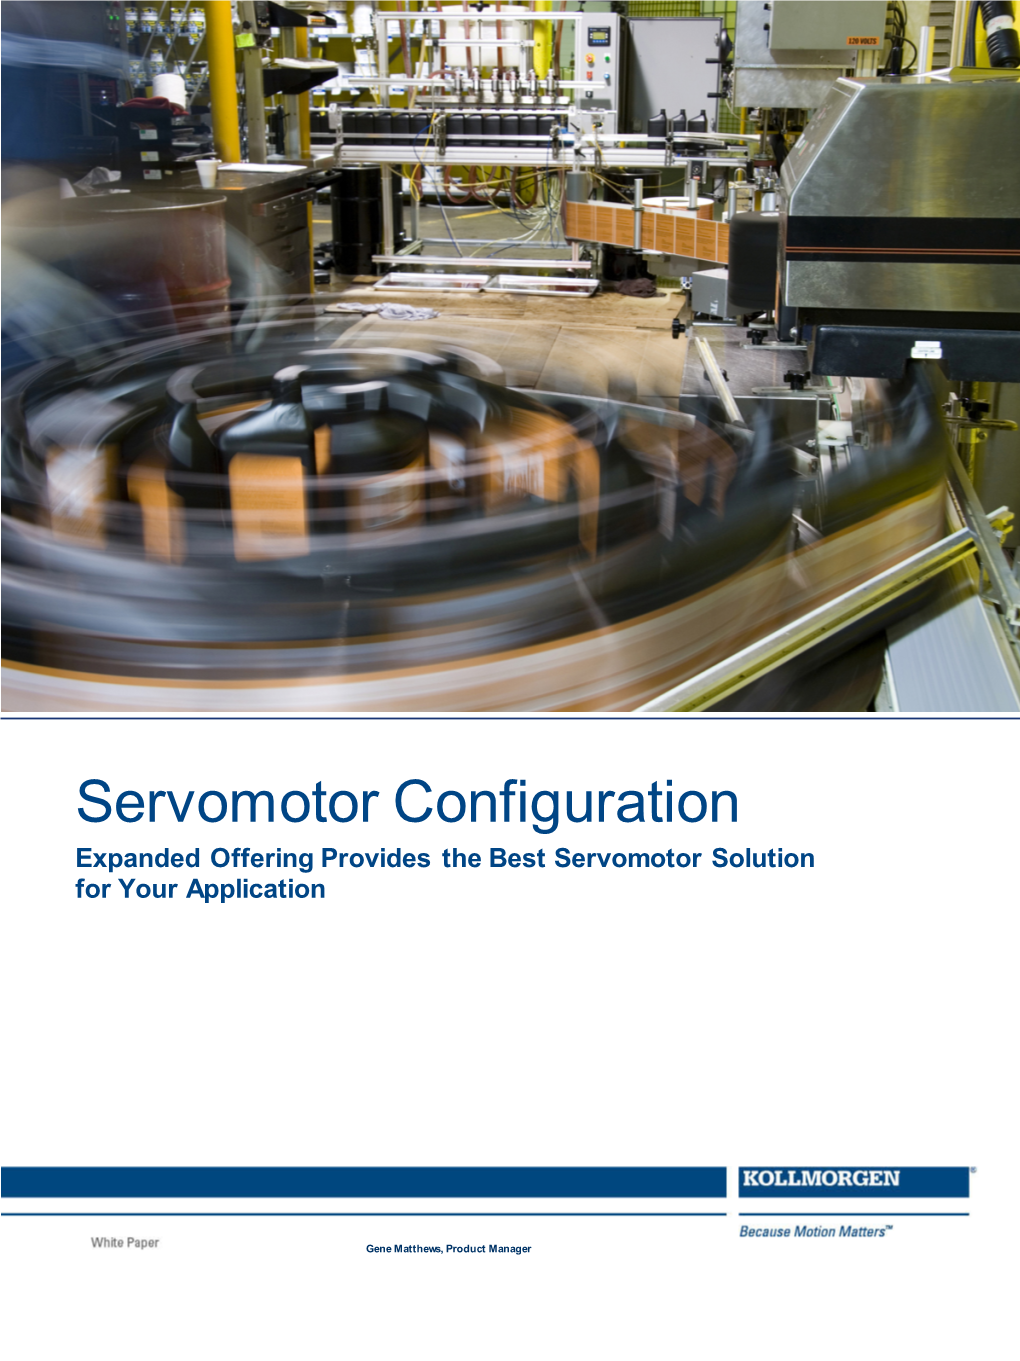 Servomotor Configuration